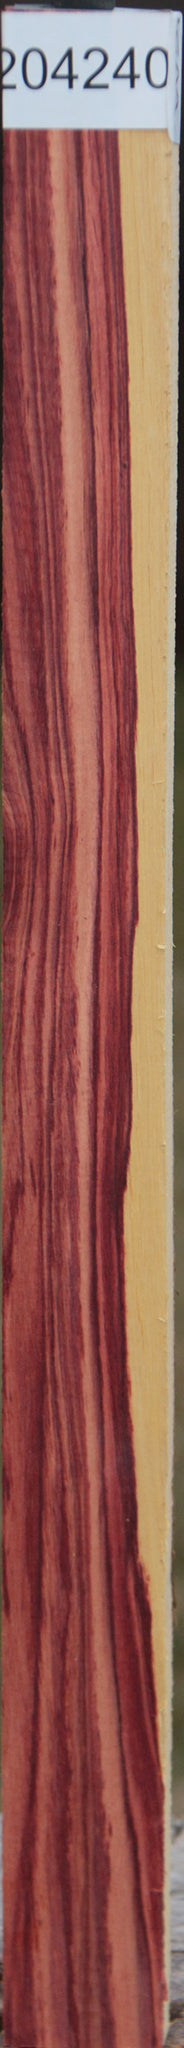 Exhibition Tulipwood Lumber